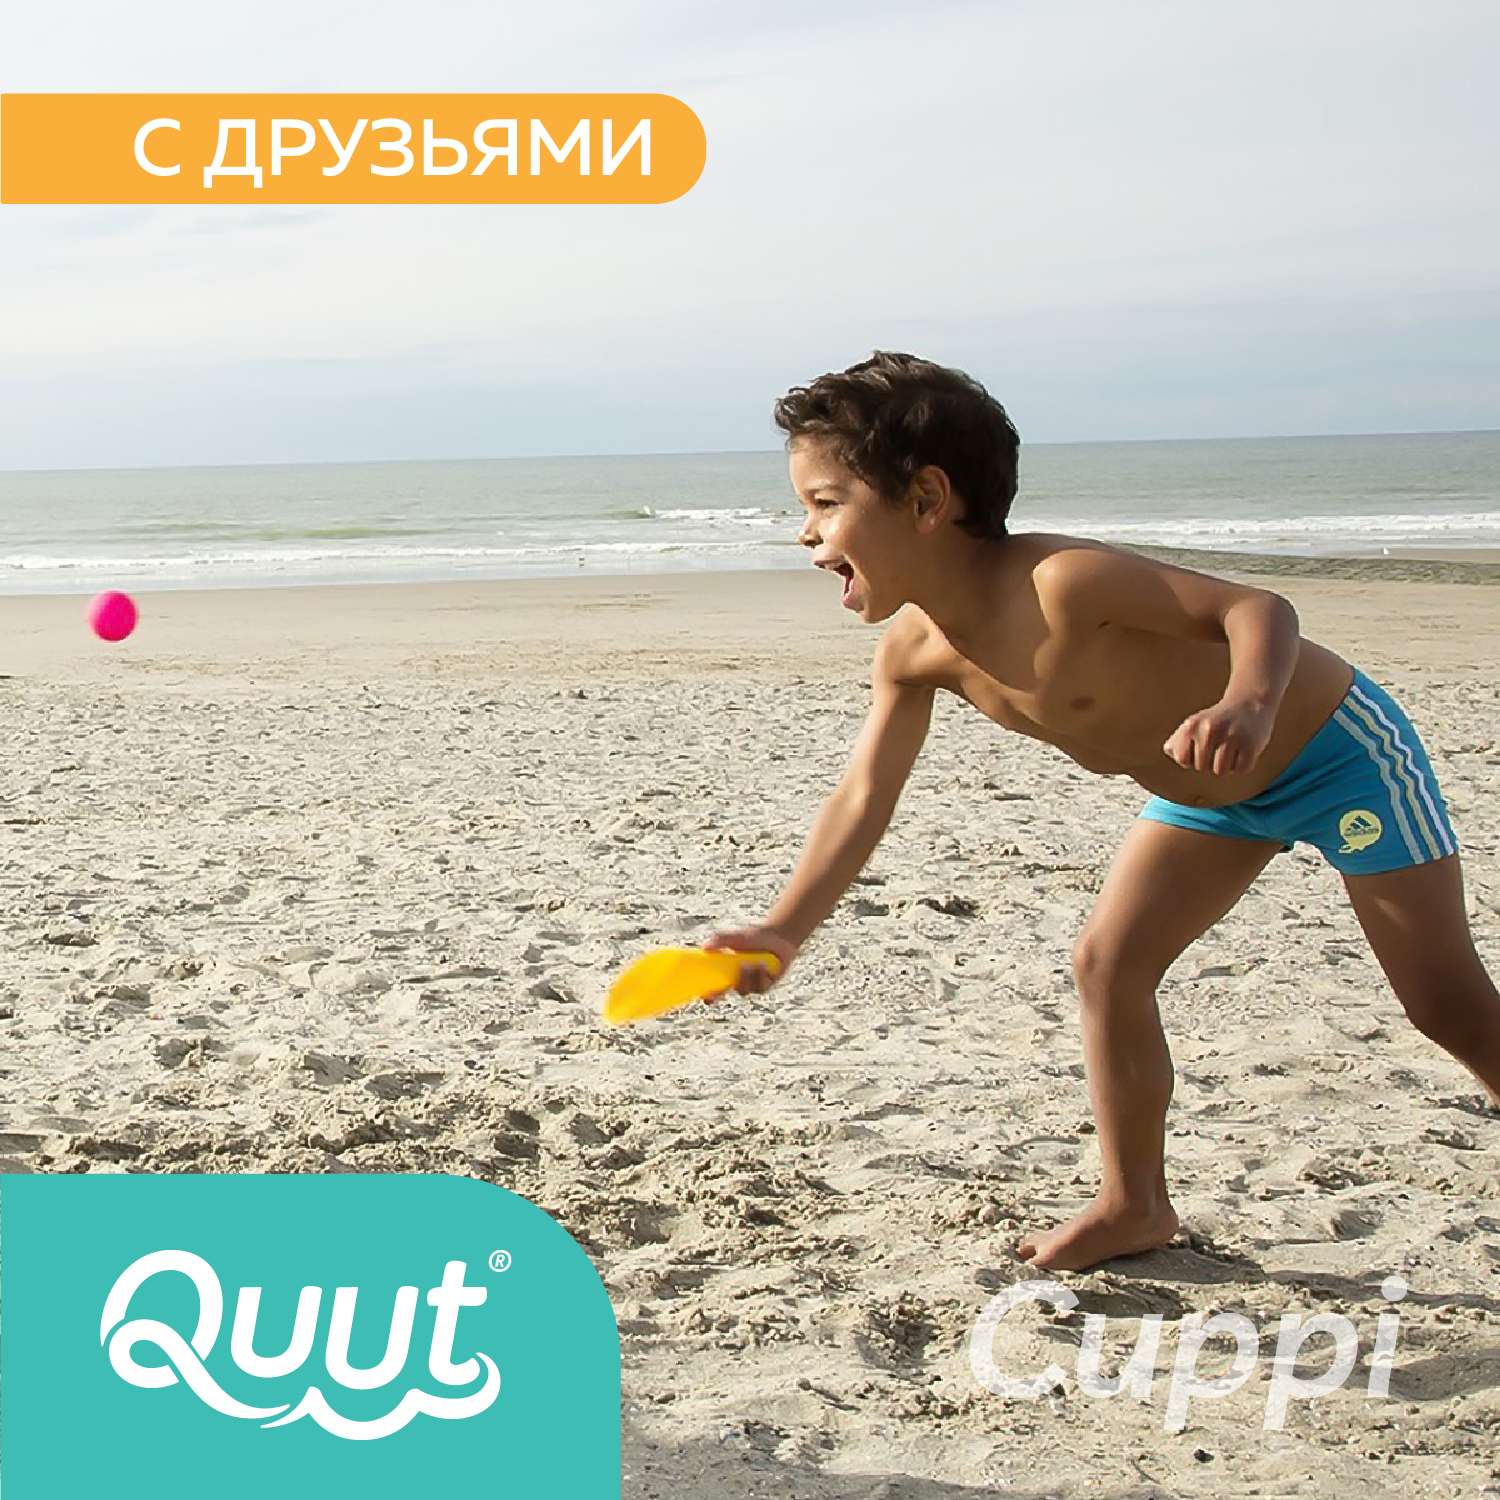 Набор для песка и снега QUUT Cuppi банановый и синий + красный мячик - фото 6